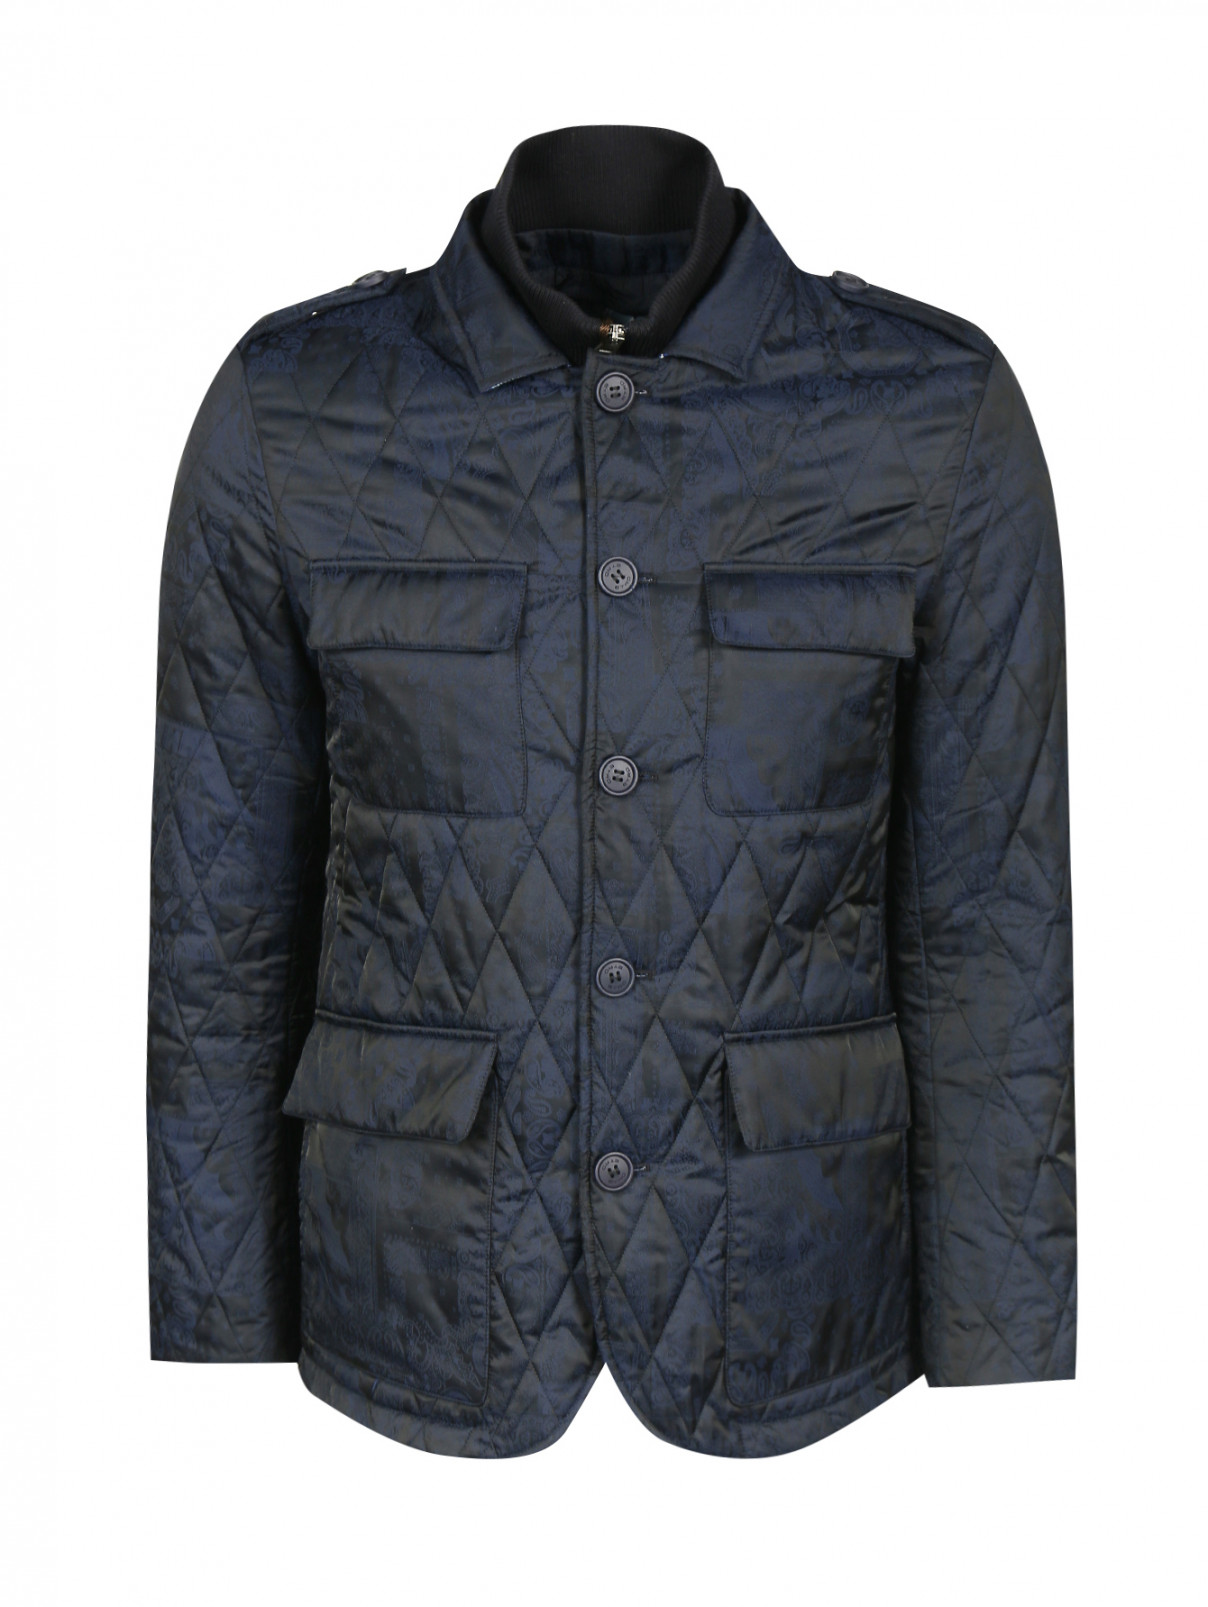 Куртка стеганая на пуговицах с узором "пейсли" Etro  –  Общий вид  – Цвет:  Синий